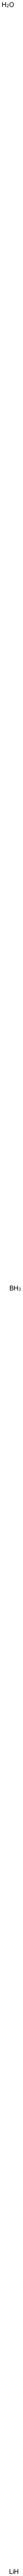 Lithium borate Structure